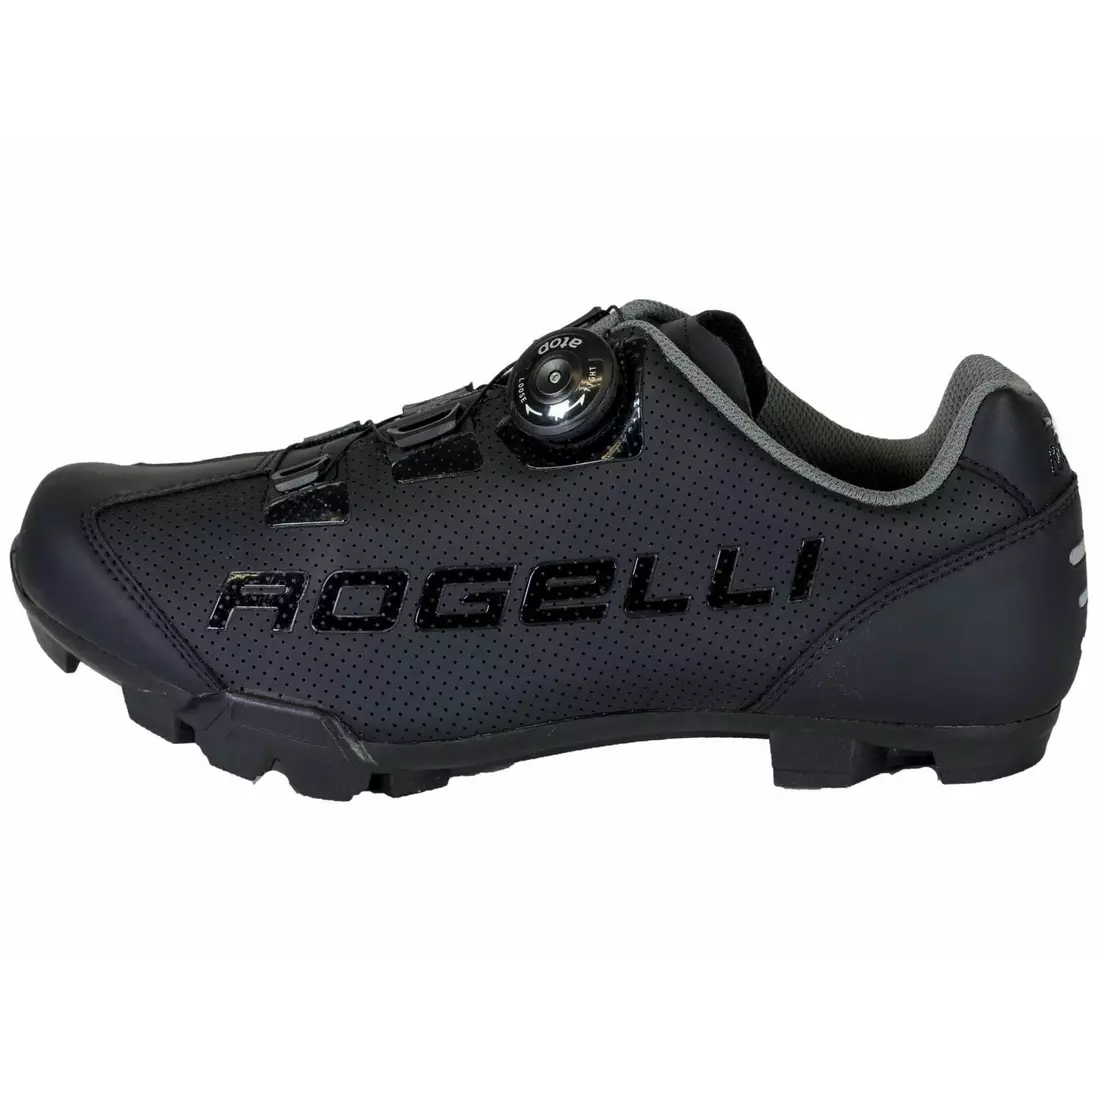 ROGELLI MTB cyklistická obuv pre mužove AB-410 čierna 